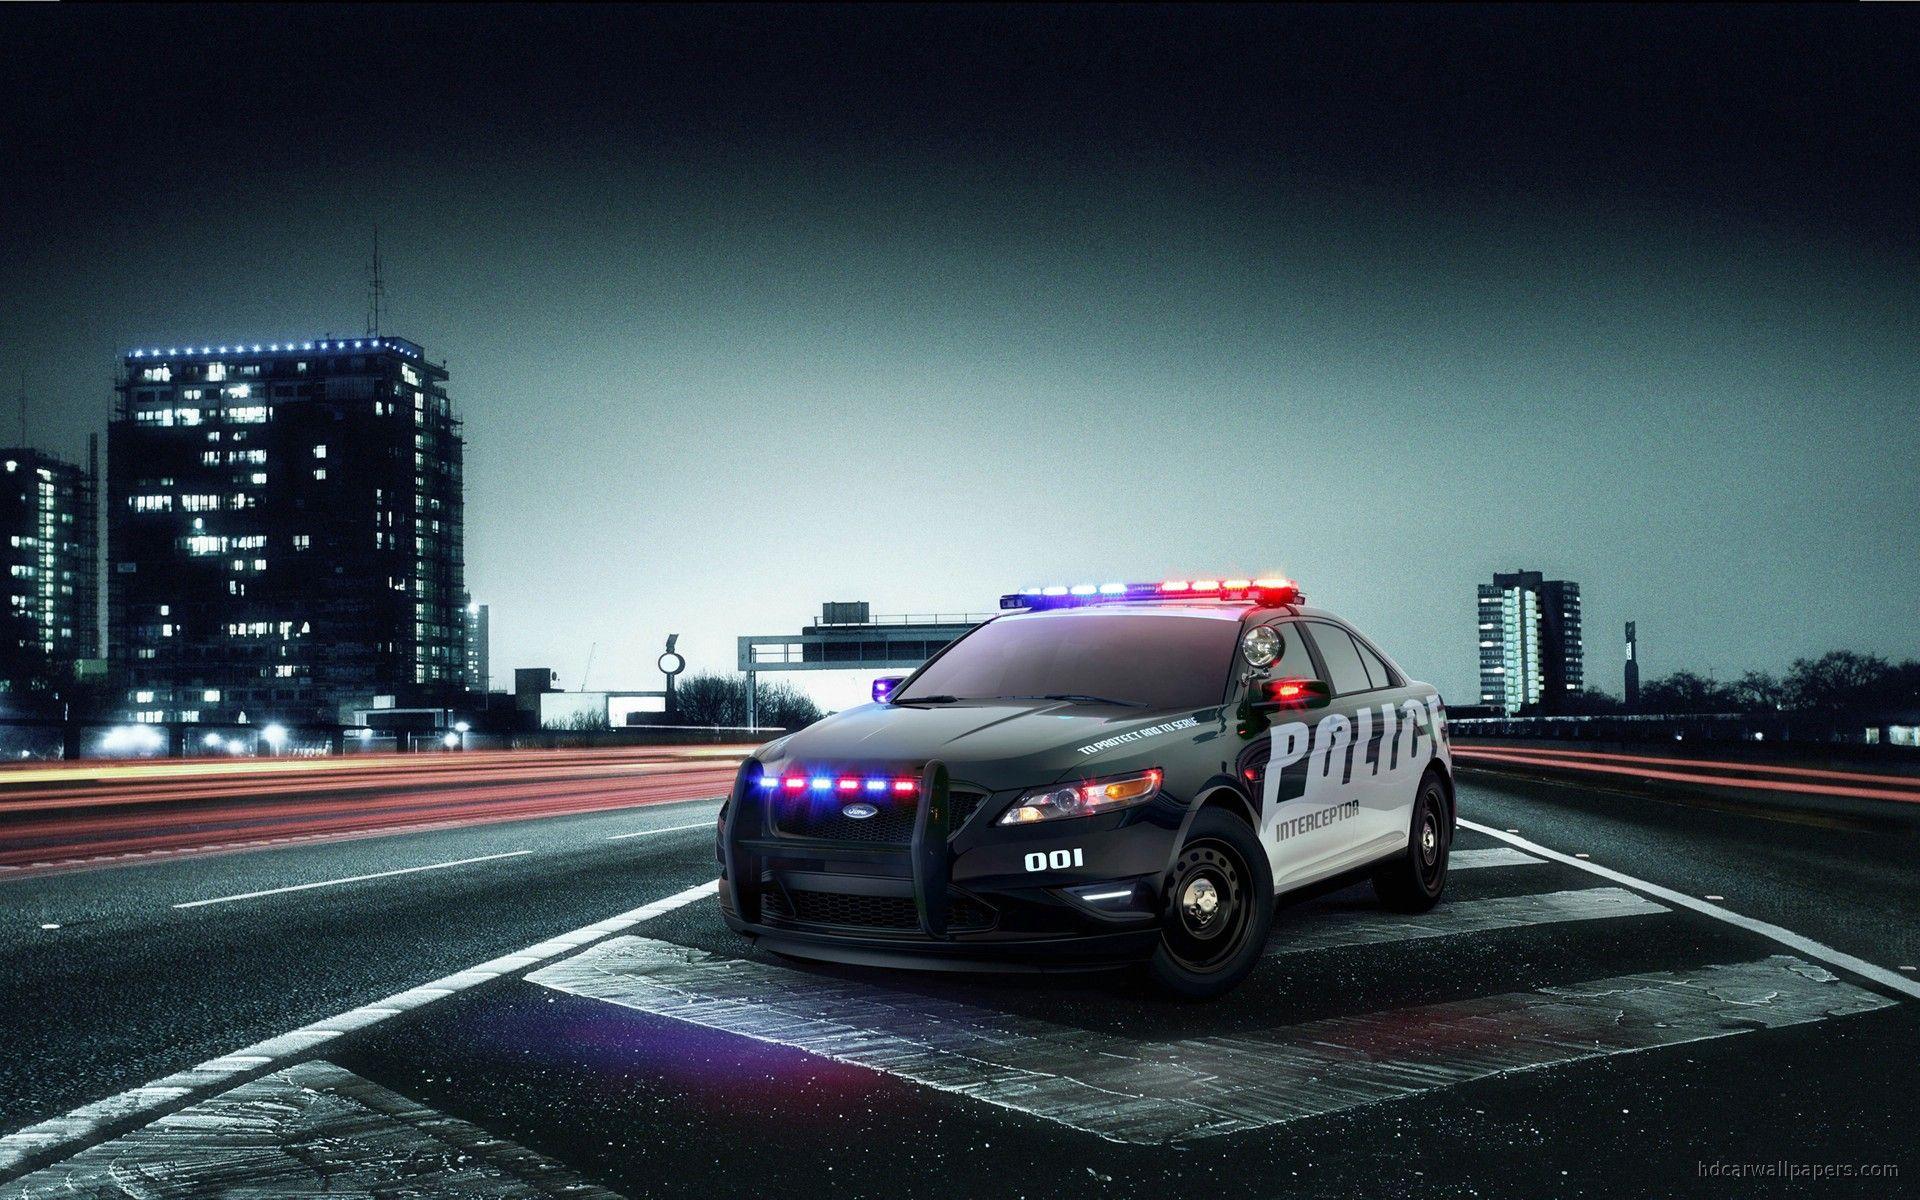 Free Car Desktop Wallpaper. Ford police, Police cars, Police